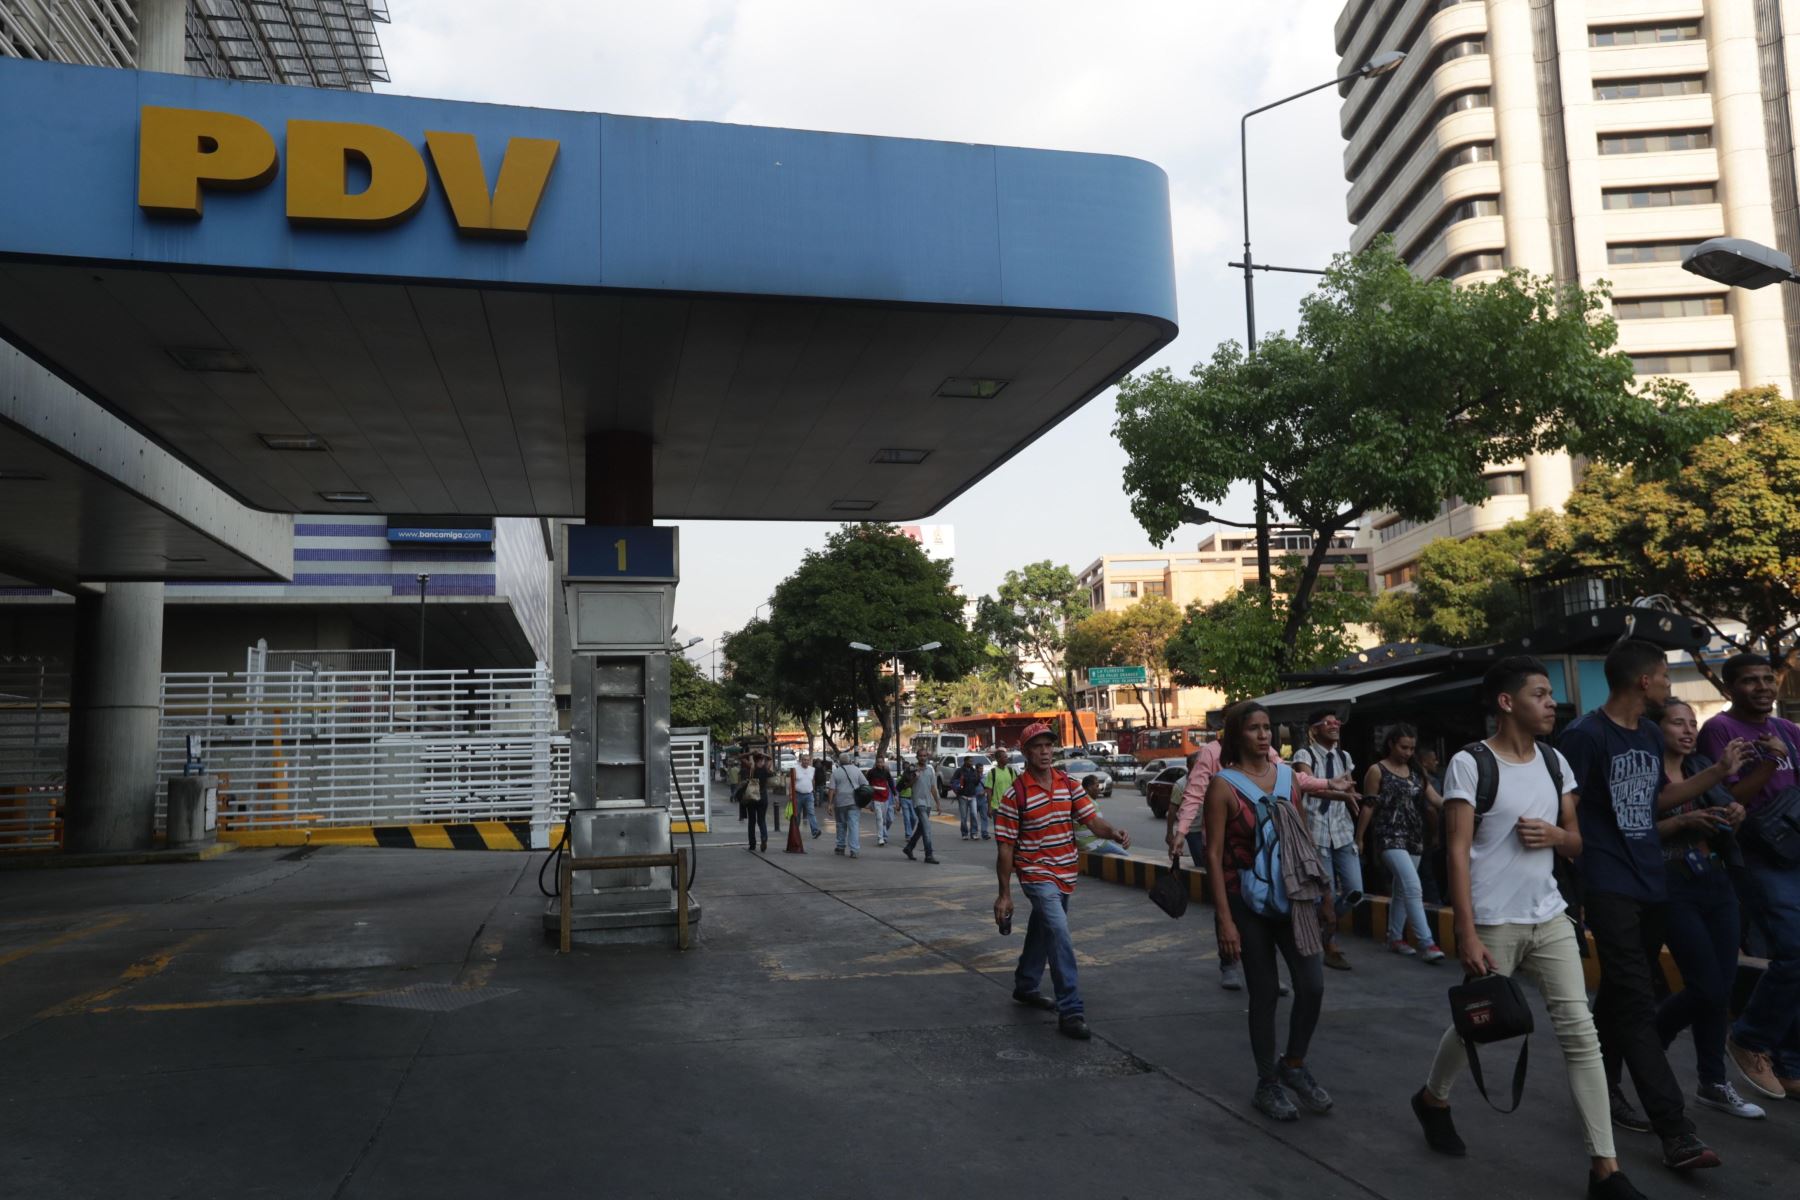 Decenas de personas se desplazan a pie y esperan autobuses debido a la suspensión del servicio del Metro por un apagón este lunes en Caracas Venezuela.Foto: EFE